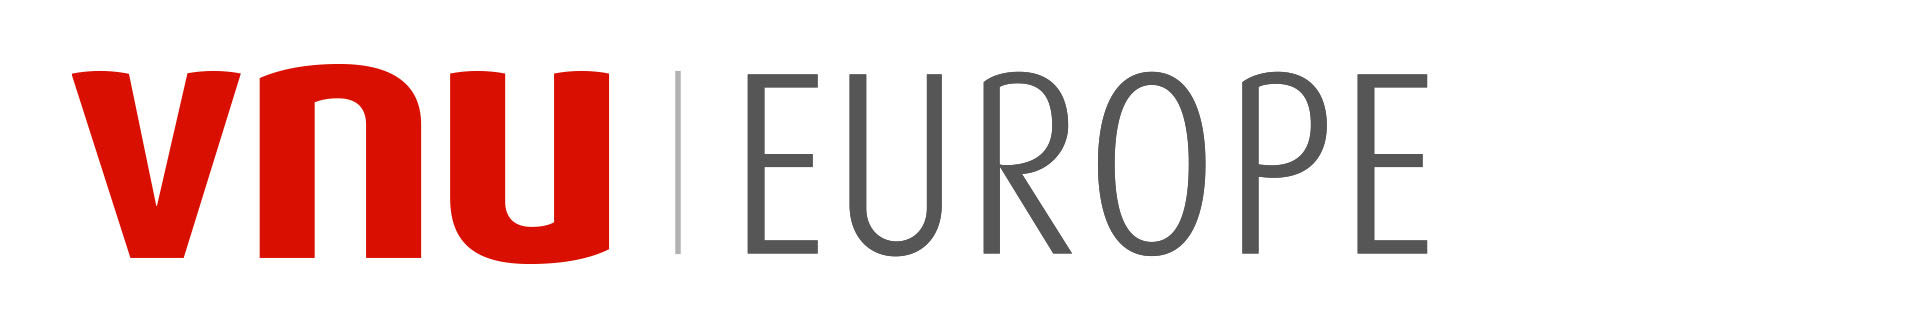 event-organizer-logo